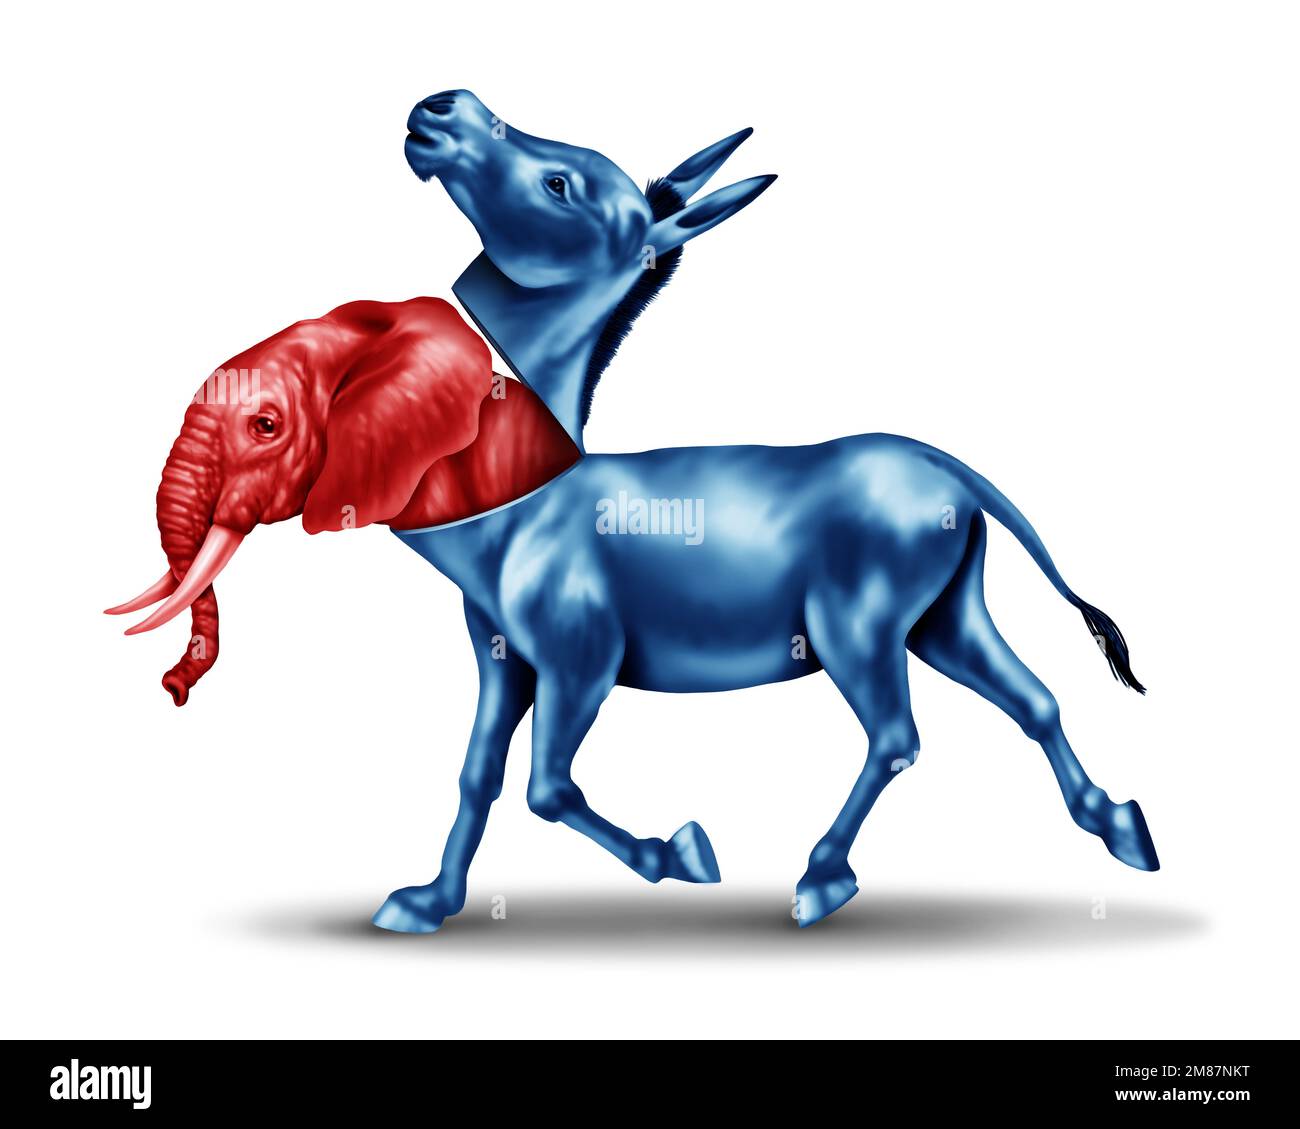 Vorgetäuscht als roter Elefant, der sich in einem amerikanischen Wahlkampf als blauer Esel ausgibt oder sich als Symbol ausgibt Stockfoto